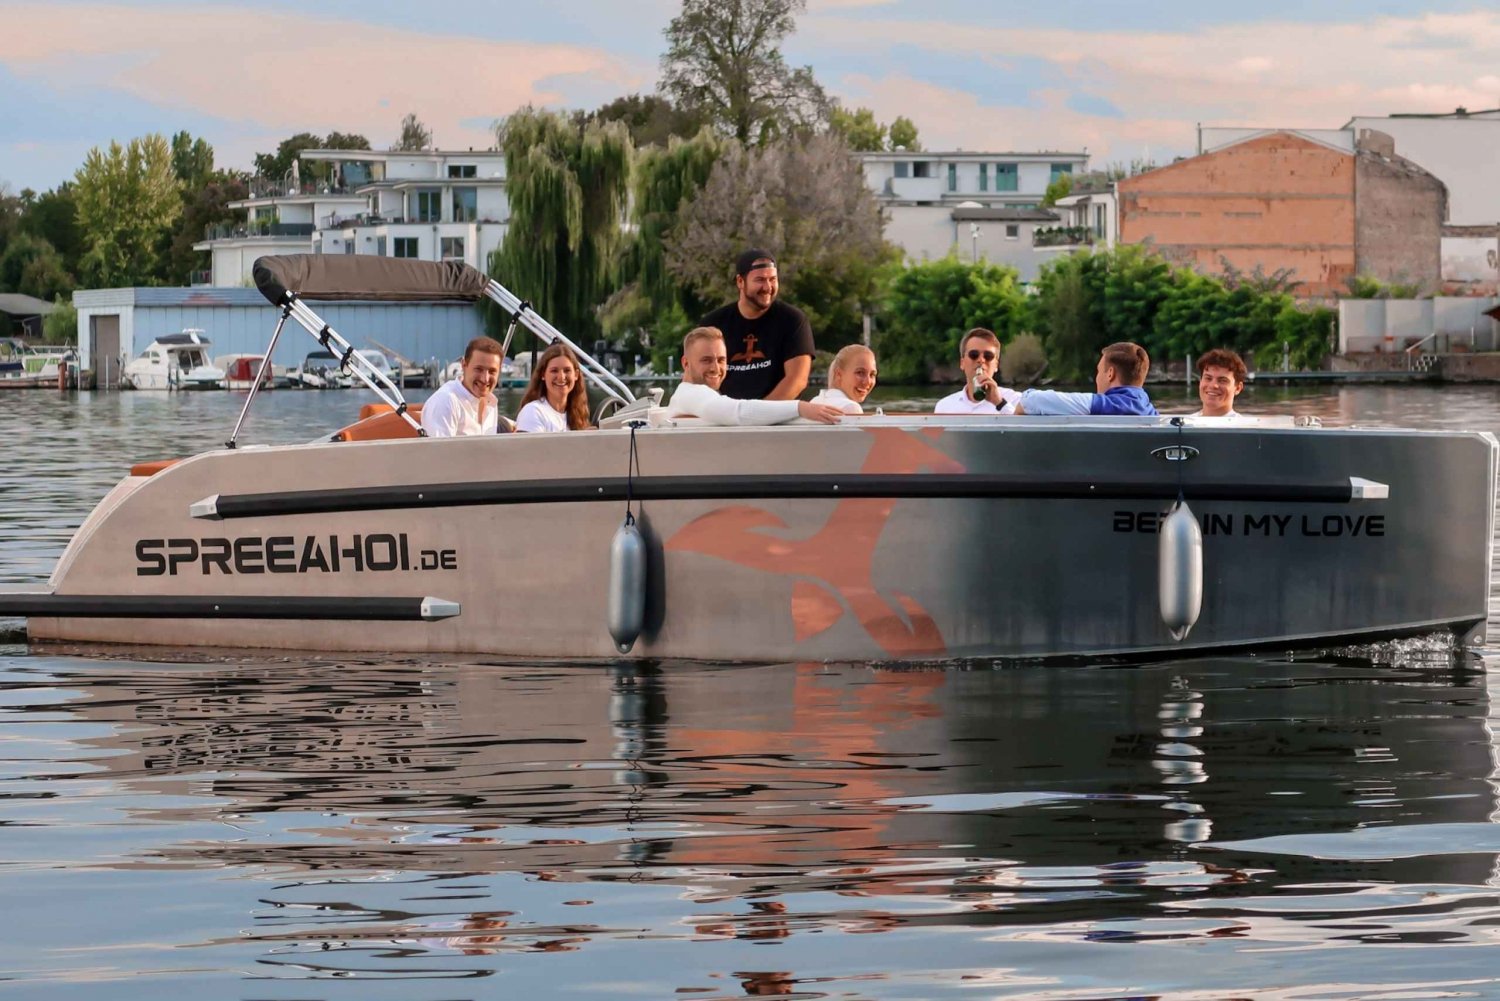 Berlijn: Elektrische boot huren voor zelf rijden 4 uur